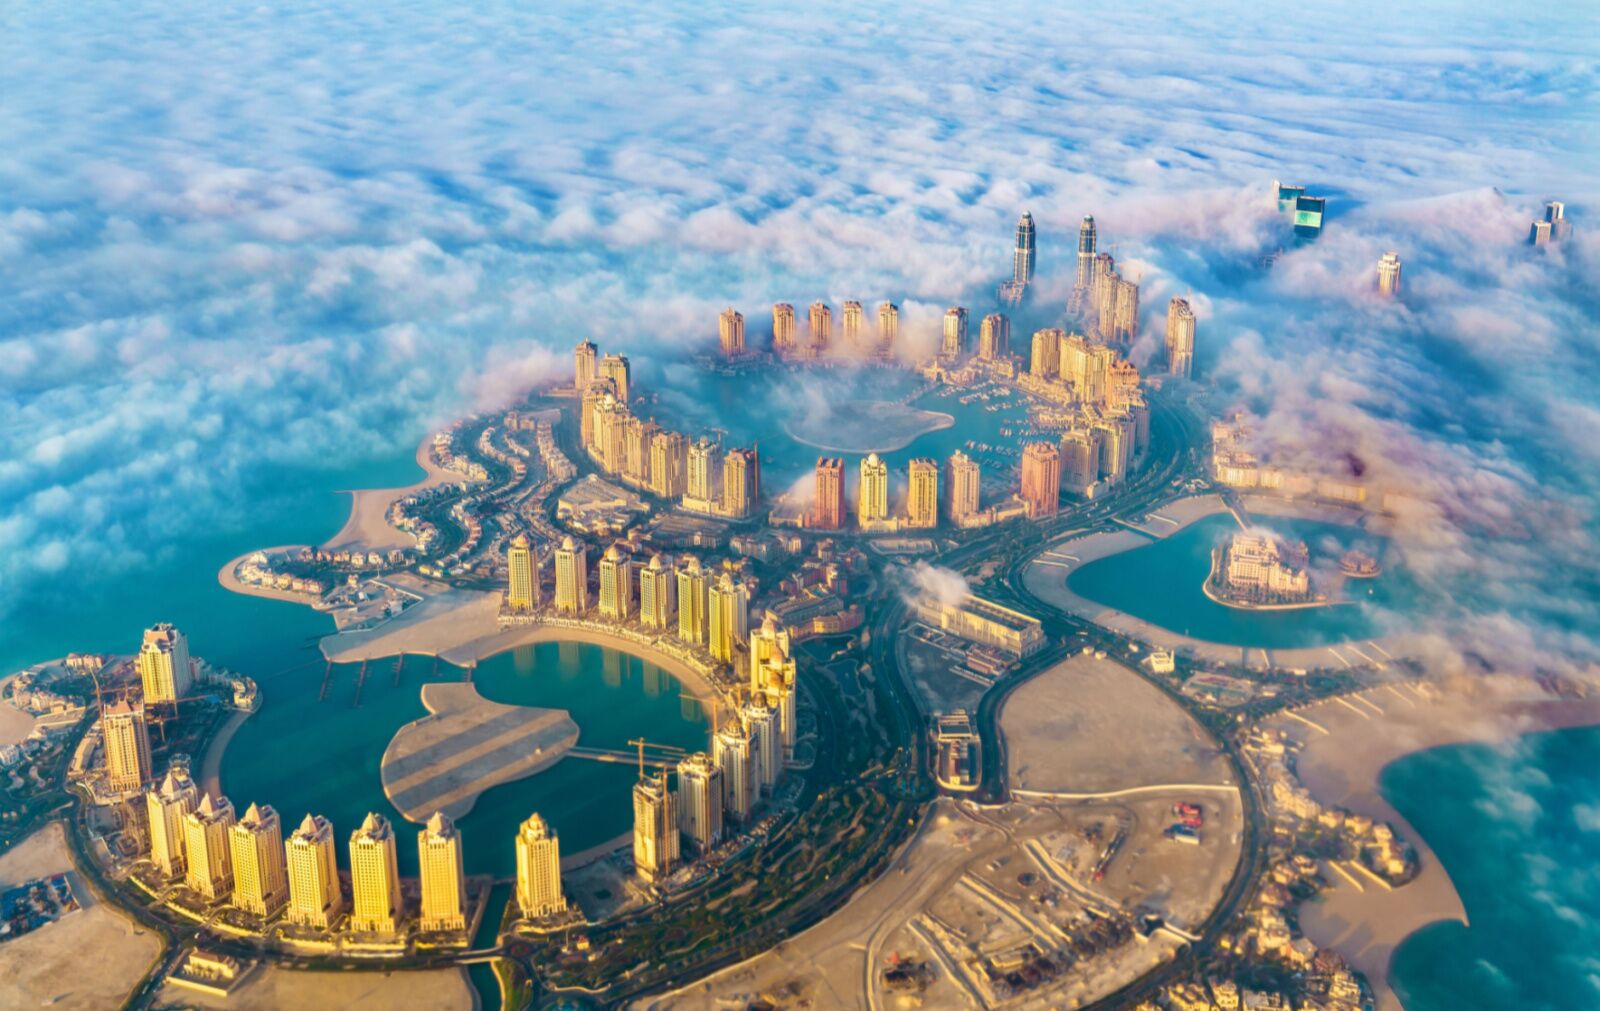 Aerial view of a Qatari island